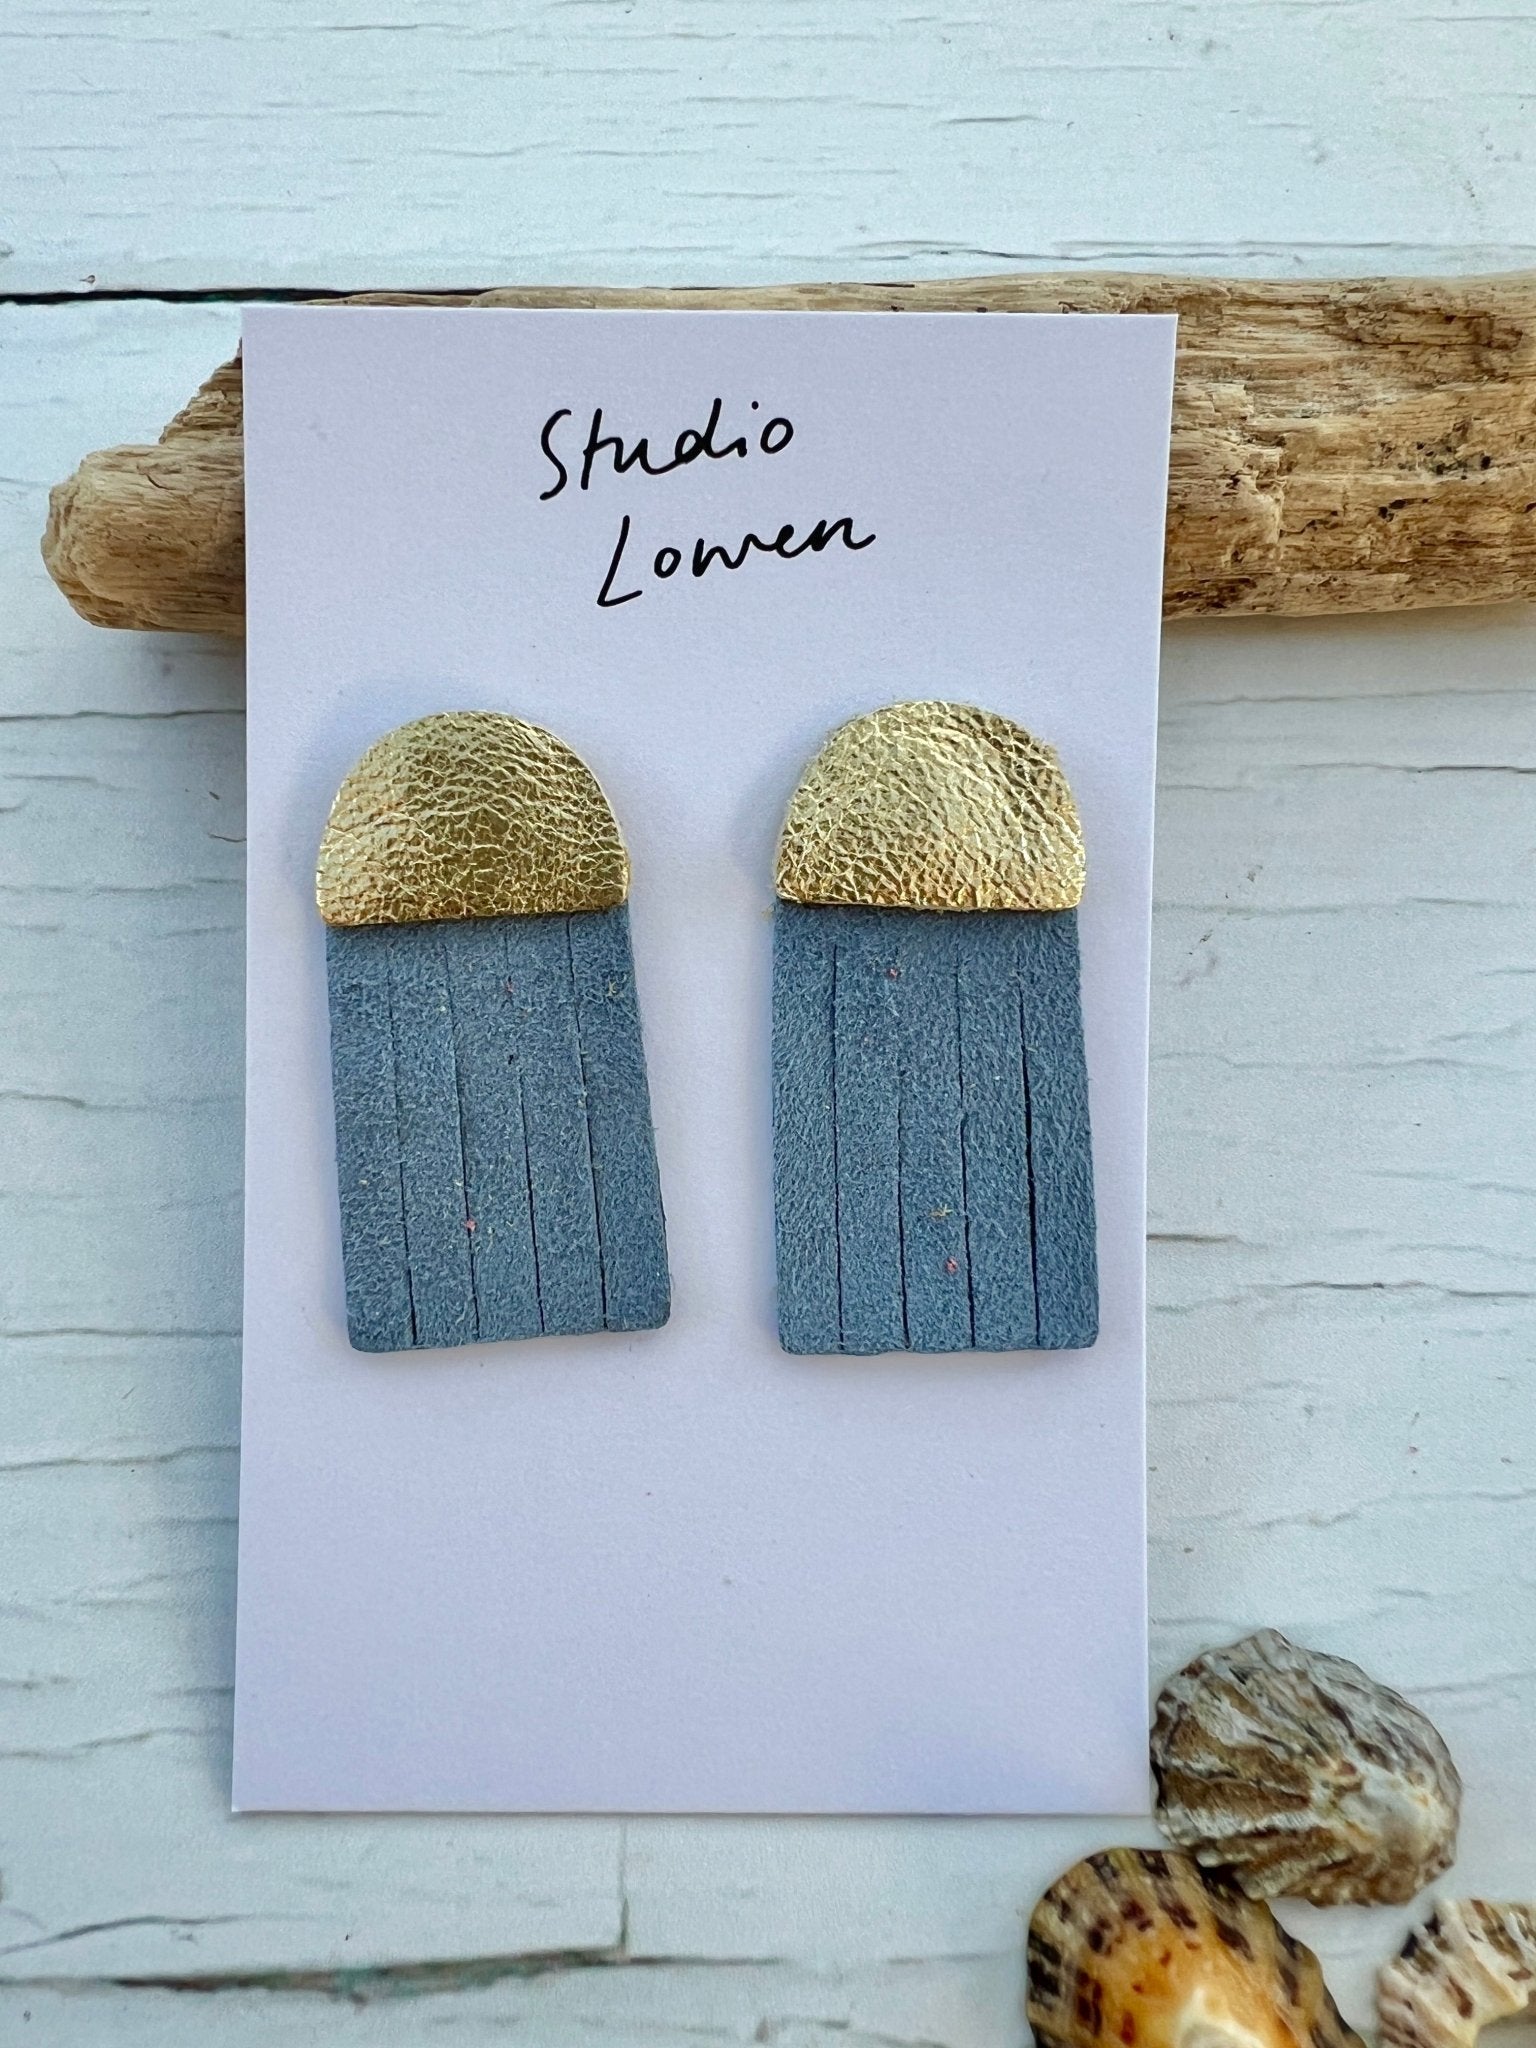 Leather & Suede Jellyfish Tassel Earrings by Studio Lowen - Readymoney Beach Shop